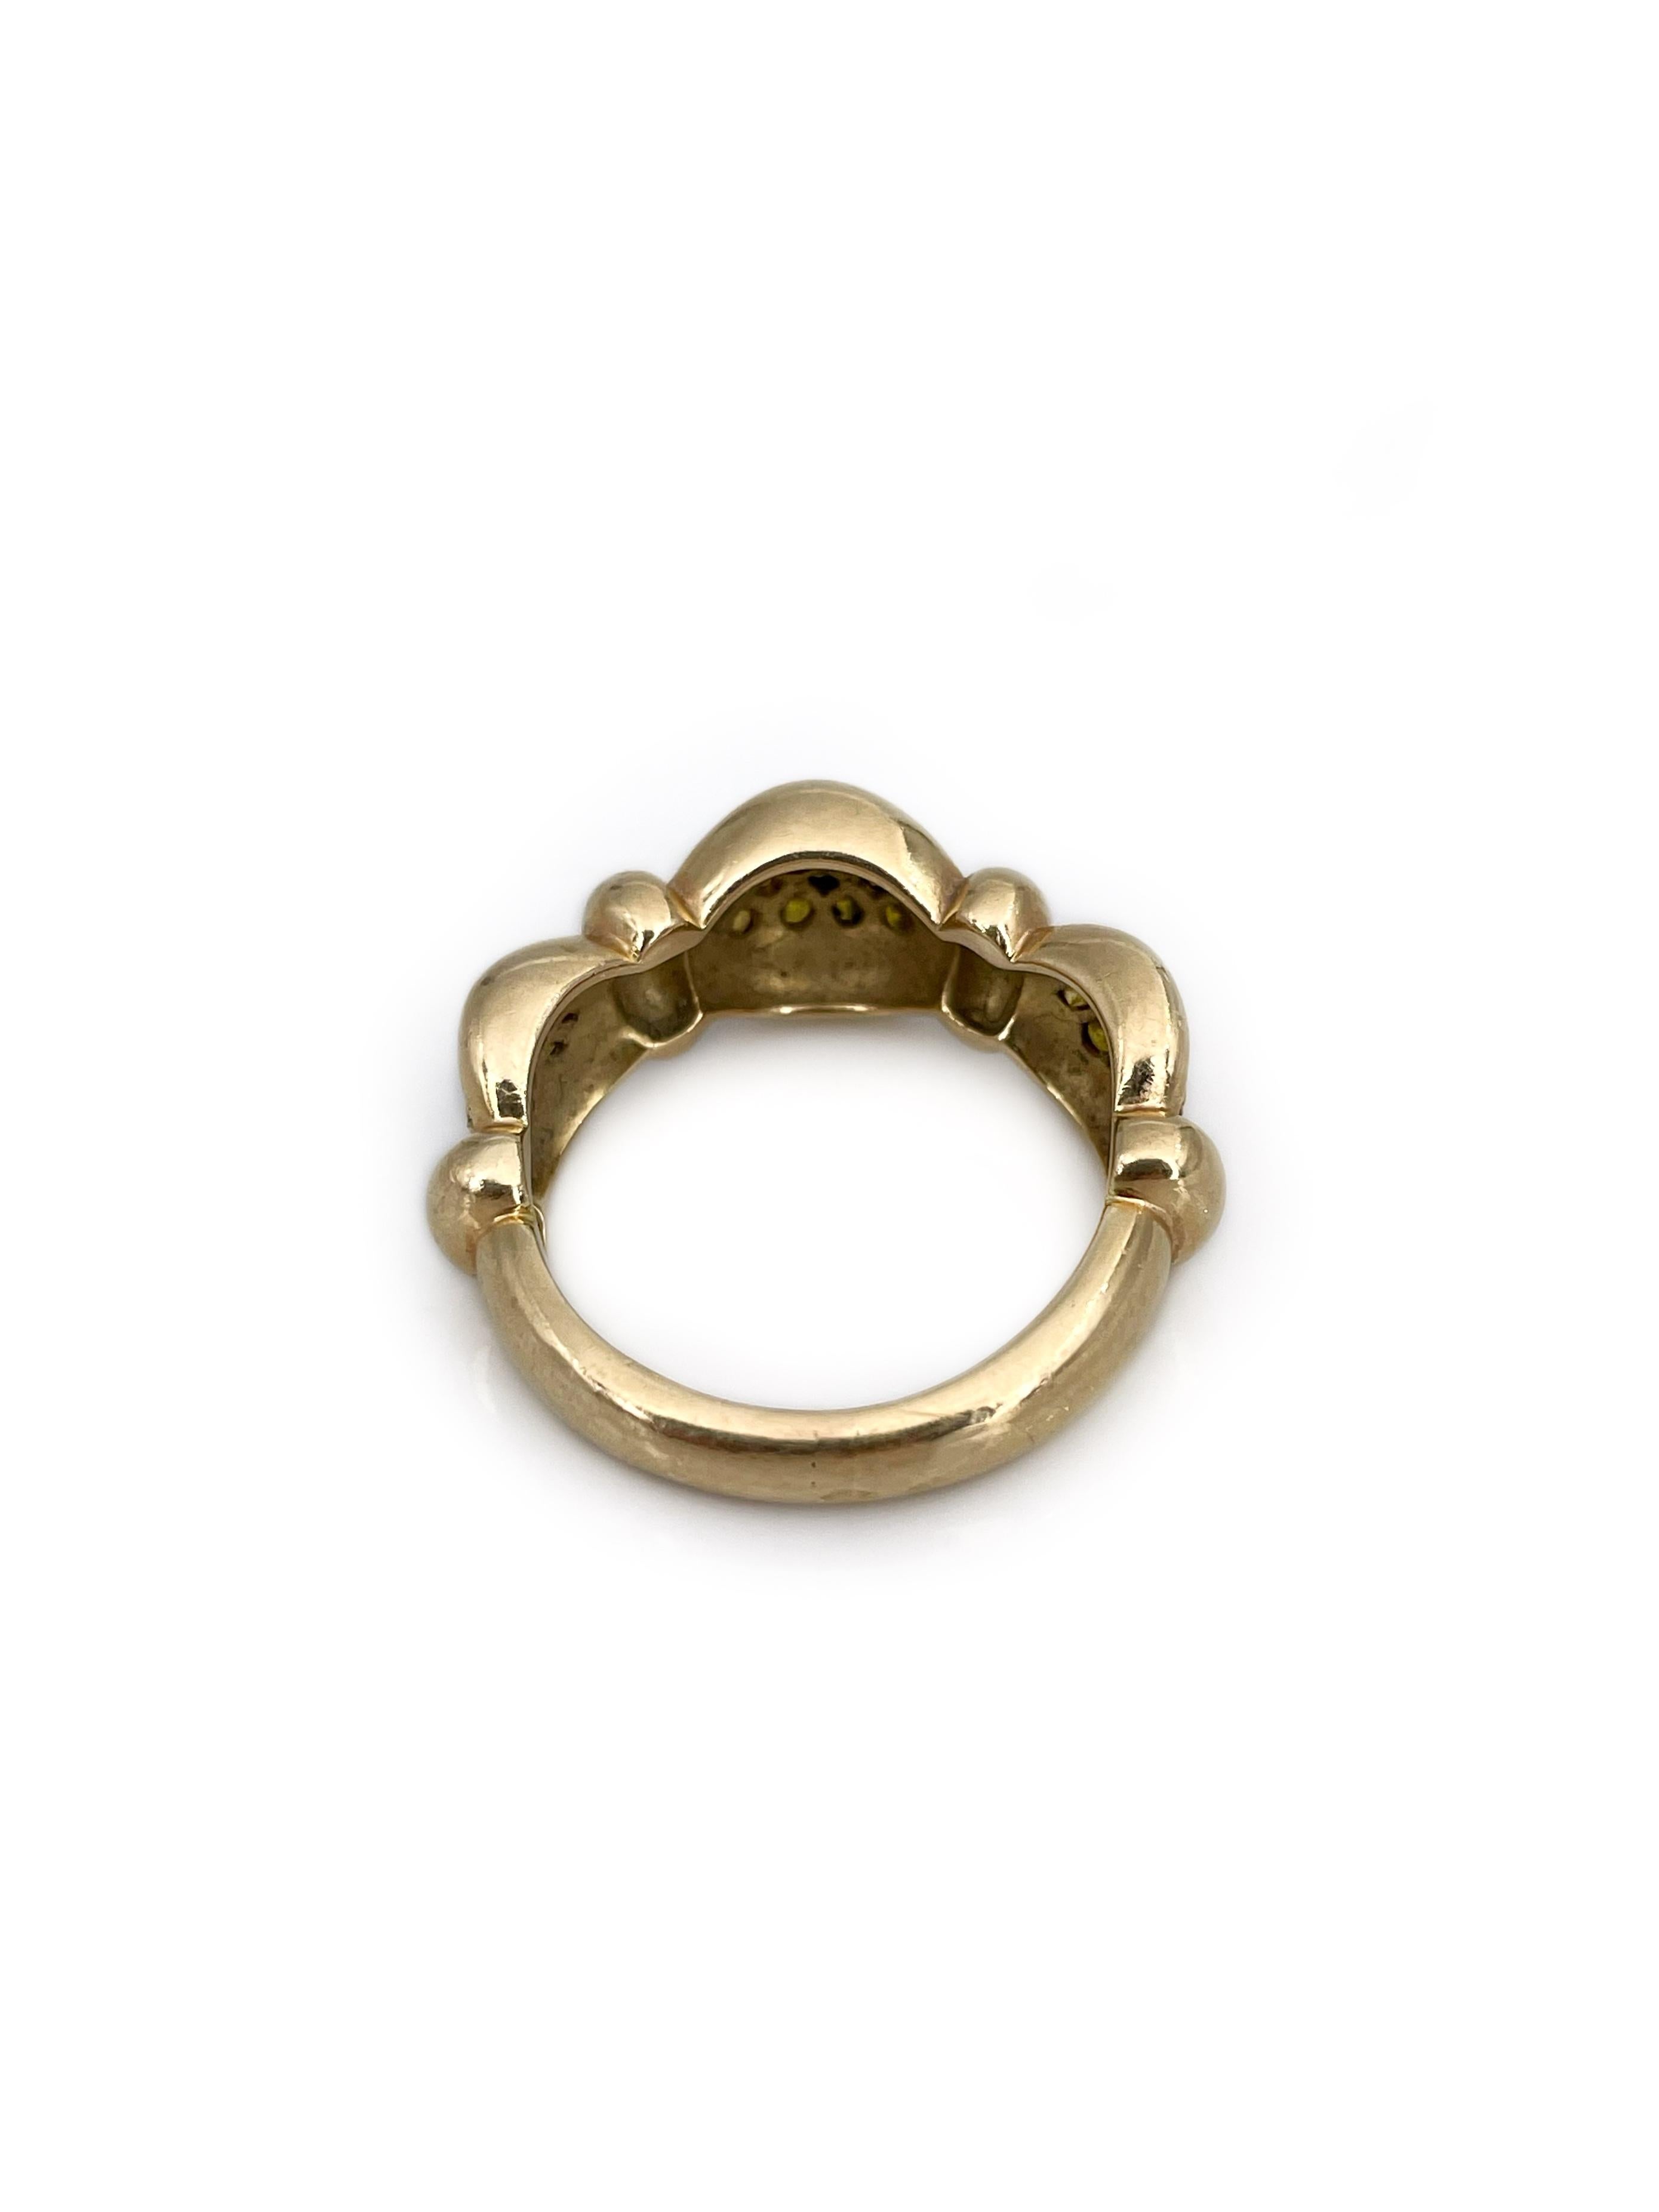 Modern 14 Karat Gold 0.65 Carat Fancy Yellow Diamond Band Ring 1